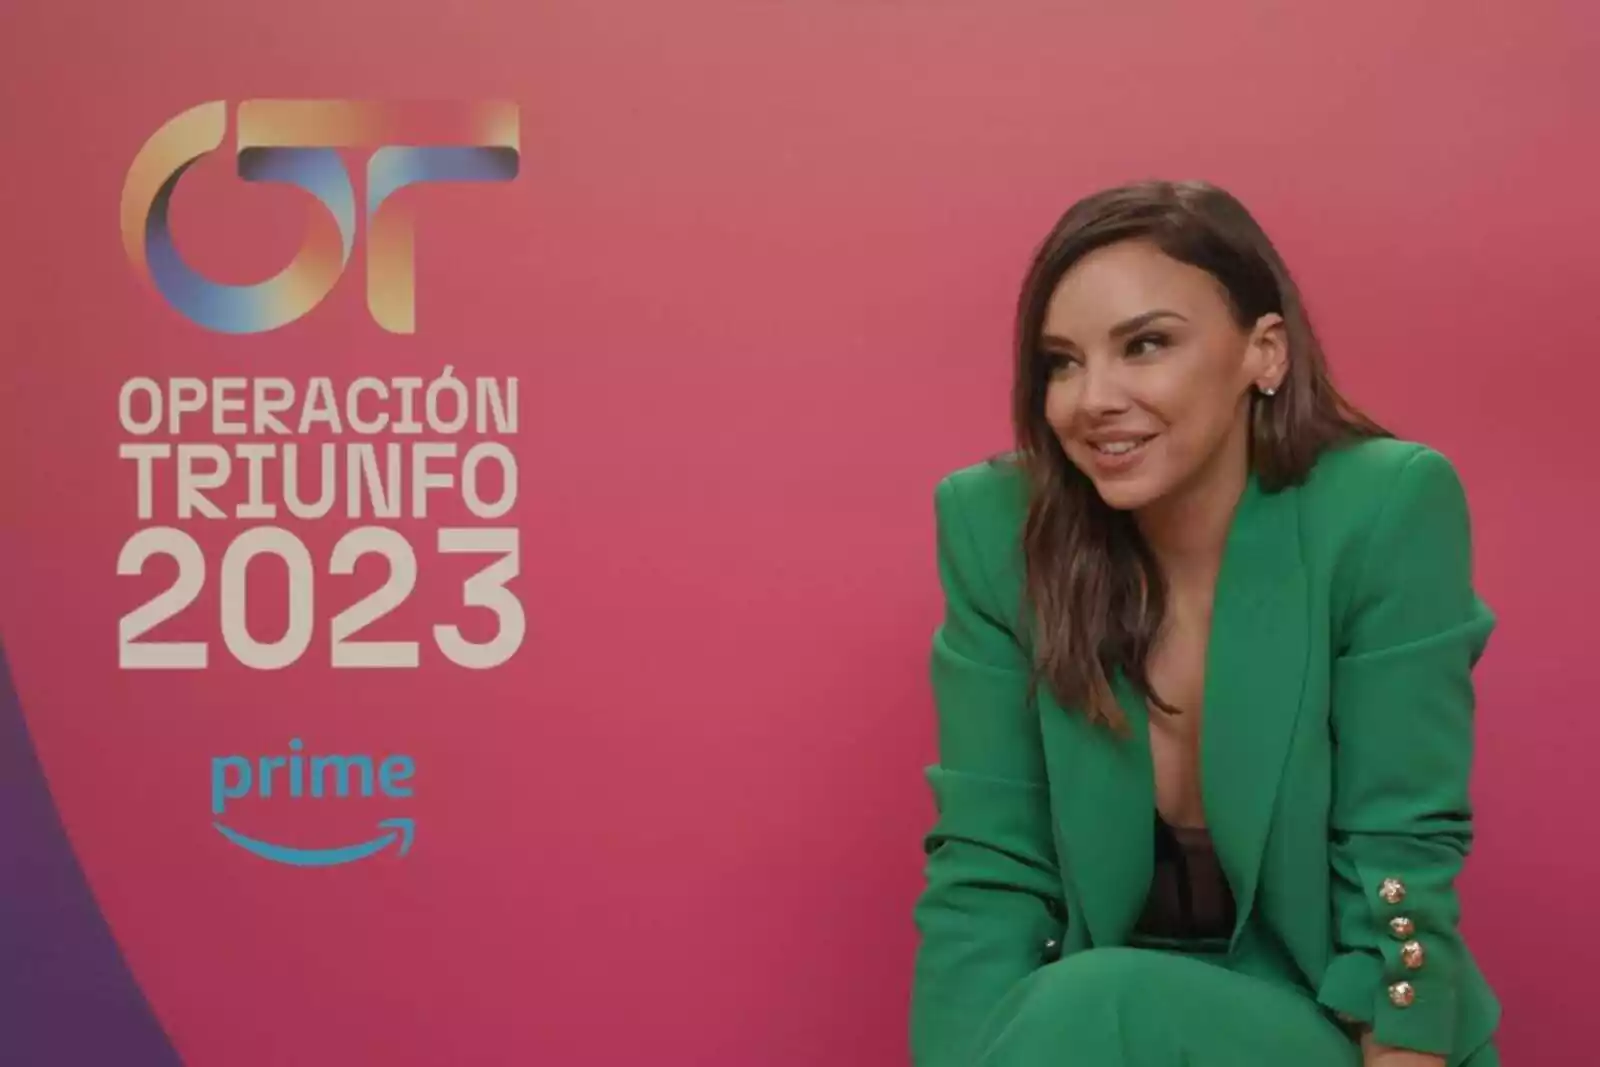 Operación Triunfo': cuando el 'talent show' y el 'reality' se dan la mano, Televisión